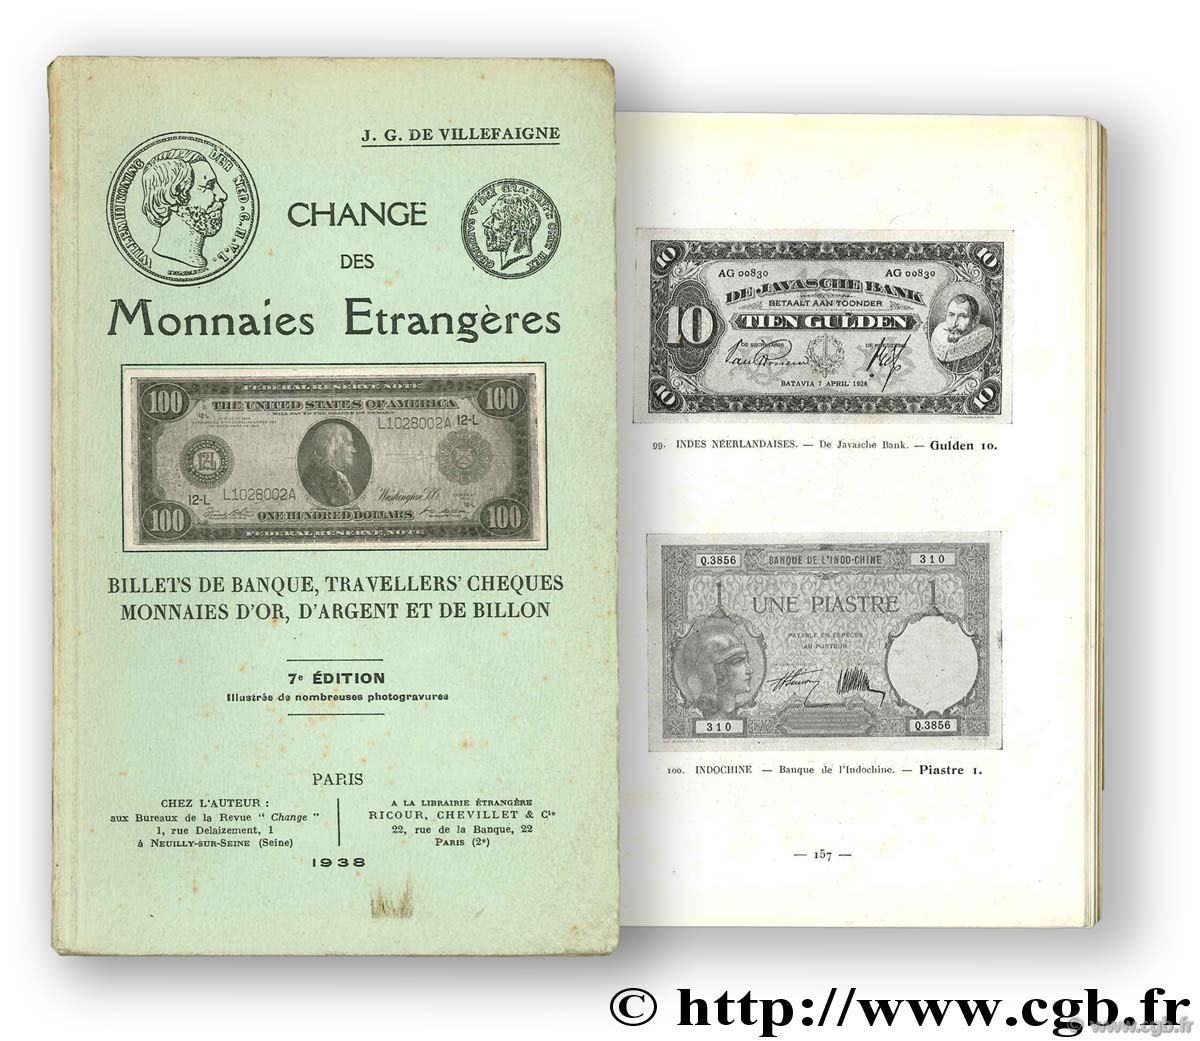 Change des monnaies étrangères VILLEFAIGNE J.-G.  de